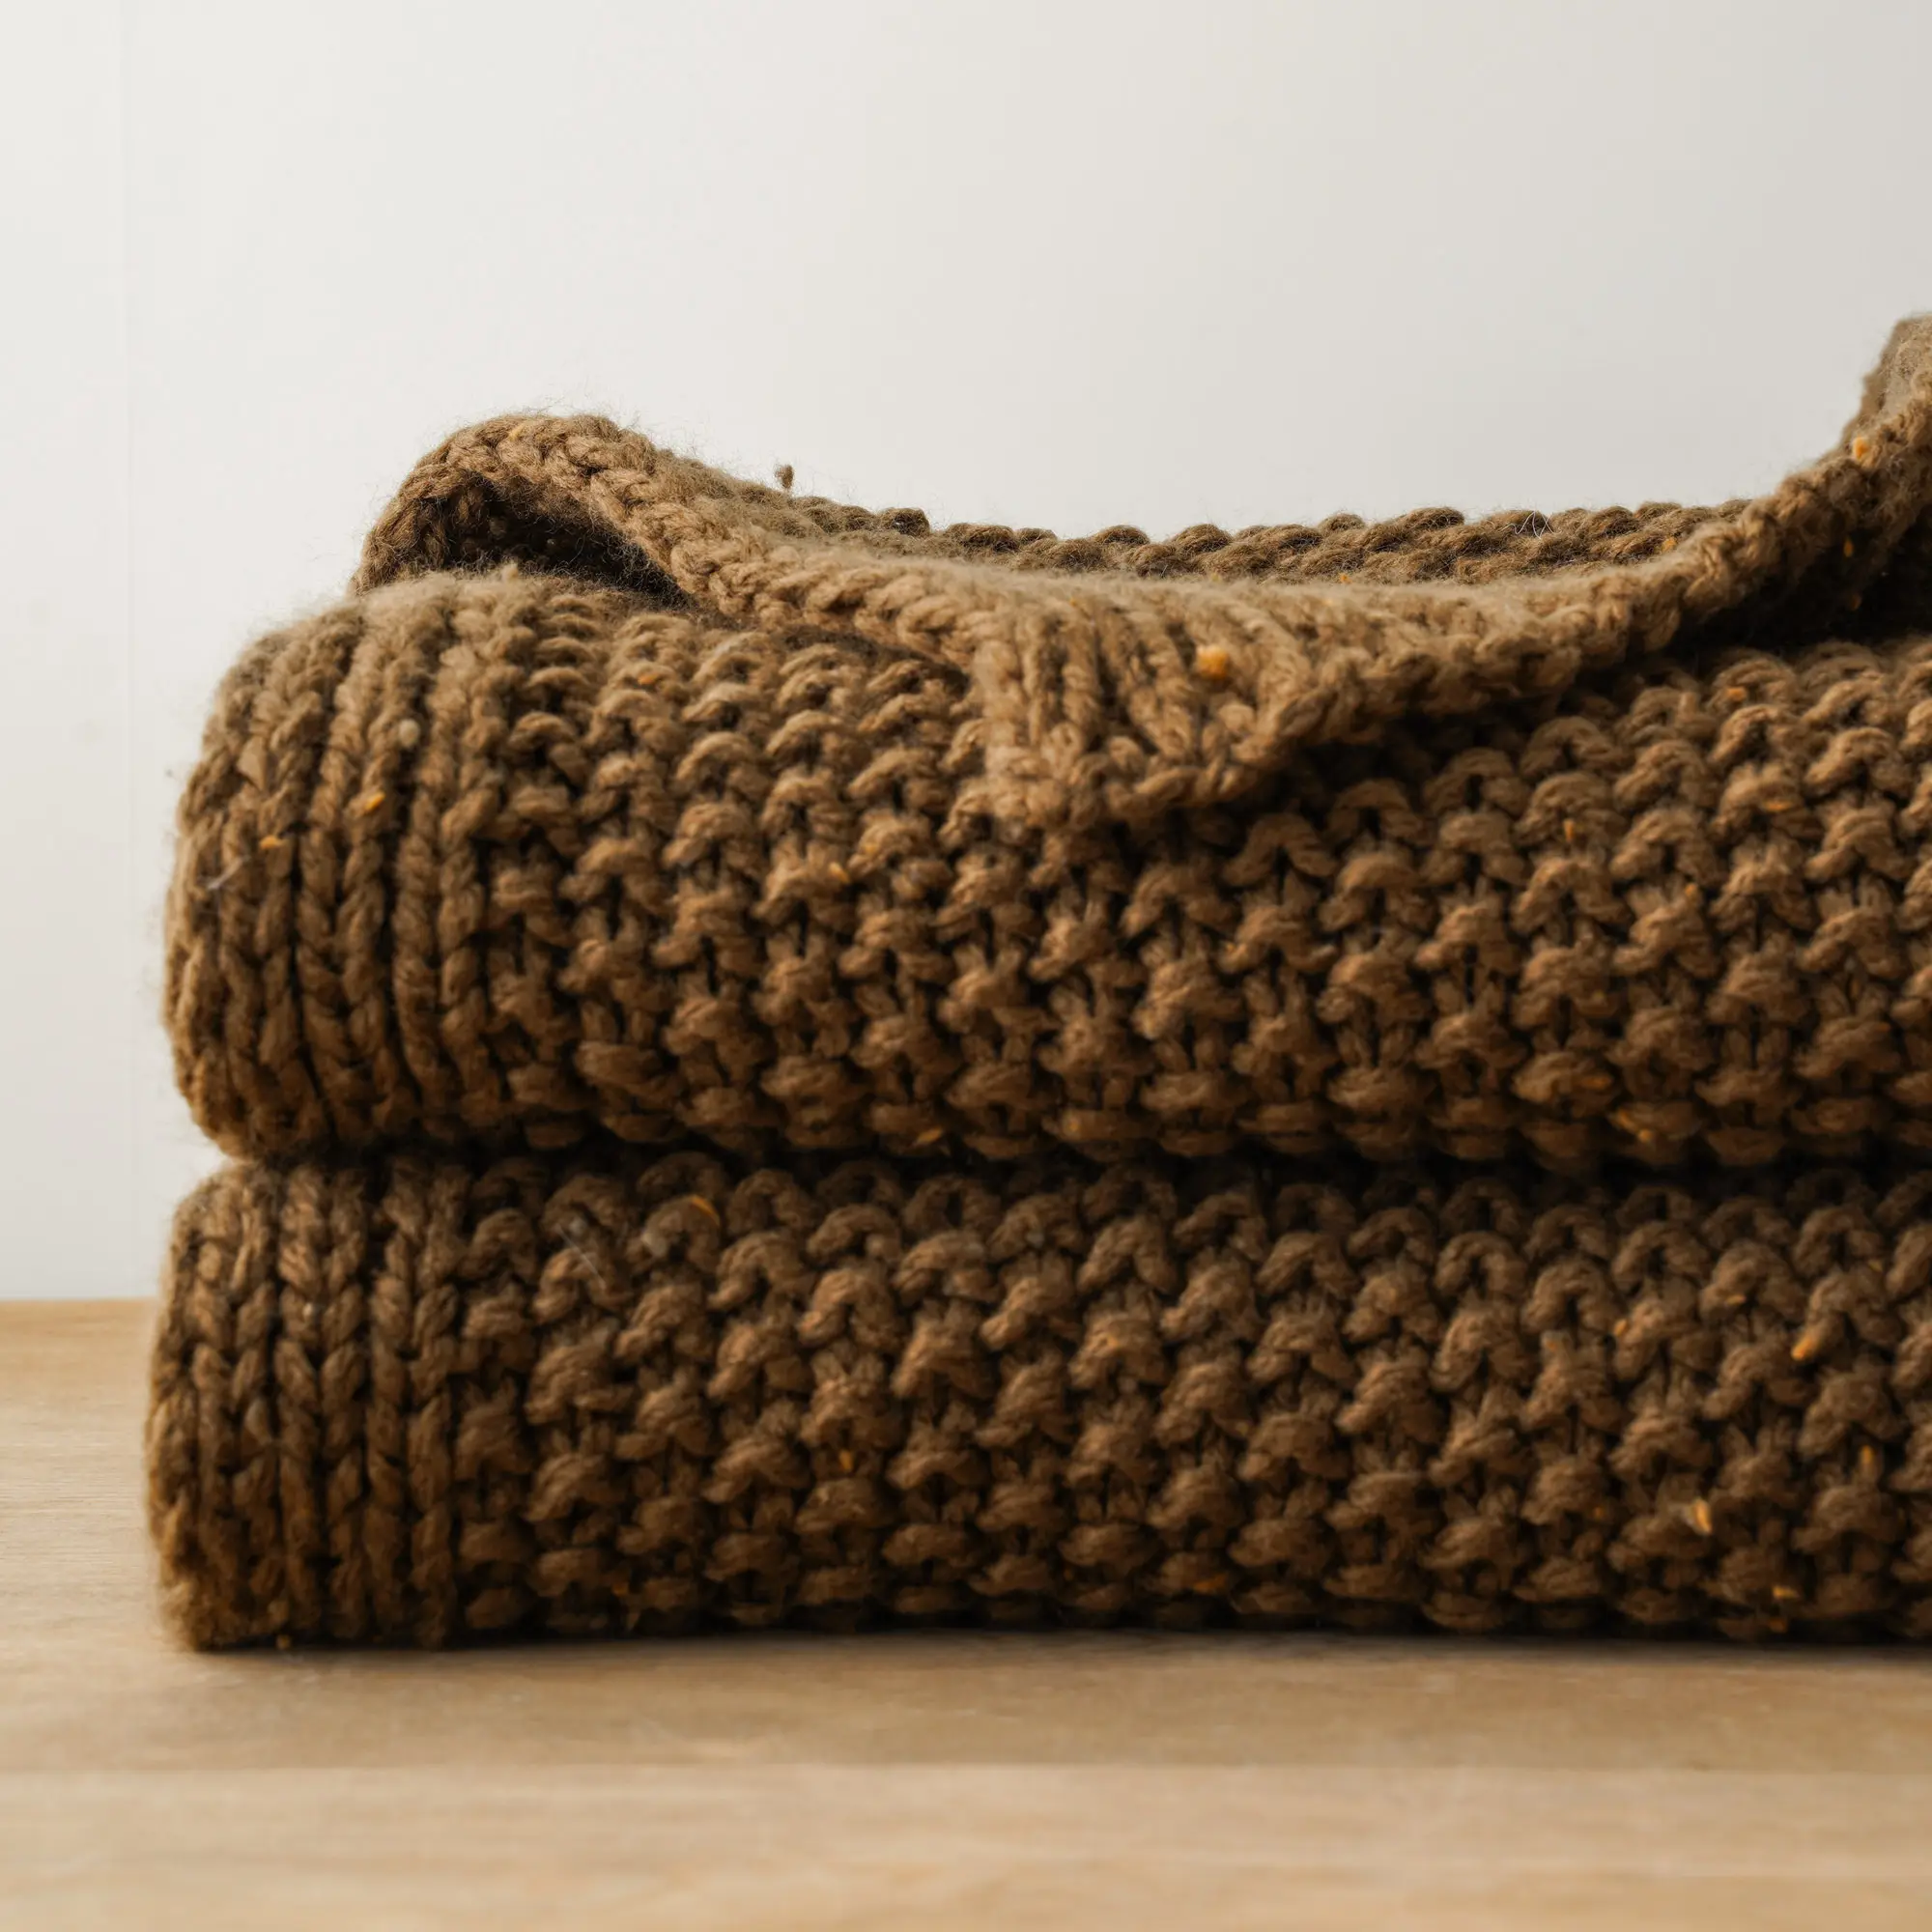 सोफे के लिए कंबल फेंकें, बनावट वाला बुना हुआ कंबल, 50x60 इंच - सुपर नरम गर्म सजावटी कंबल